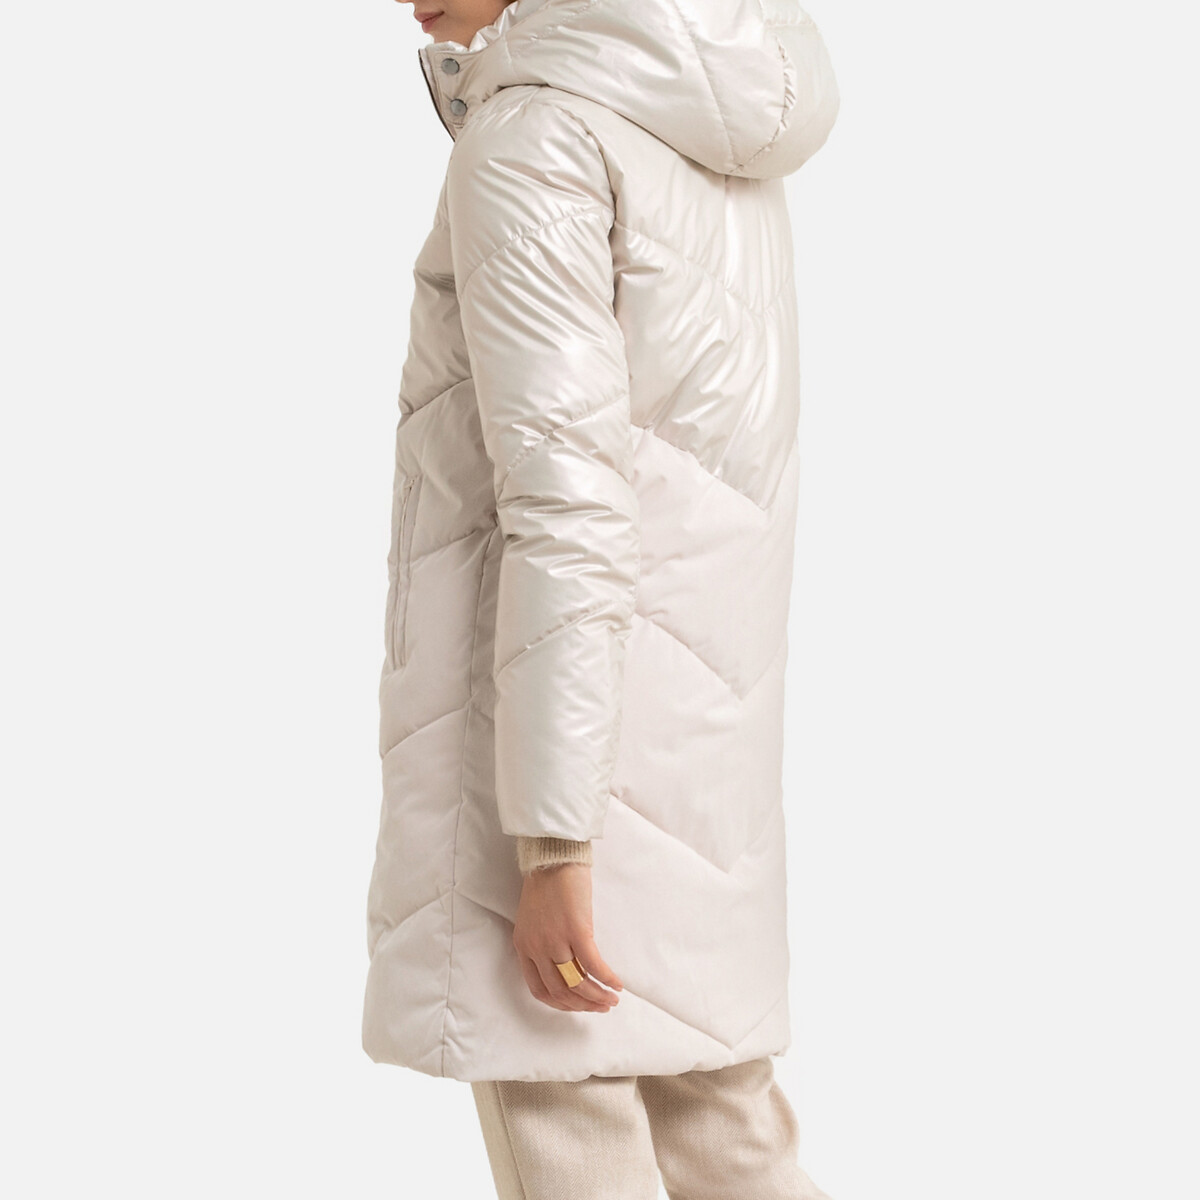 Куртка LaRedoute Стеганая средней длины с капюшоном зимняя модель 40 (FR) - 46 (RUS) бежевый, размер 40 (FR) - 46 (RUS) Стеганая средней длины с капюшоном зимняя модель 40 (FR) - 46 (RUS) бежевый - фото 4